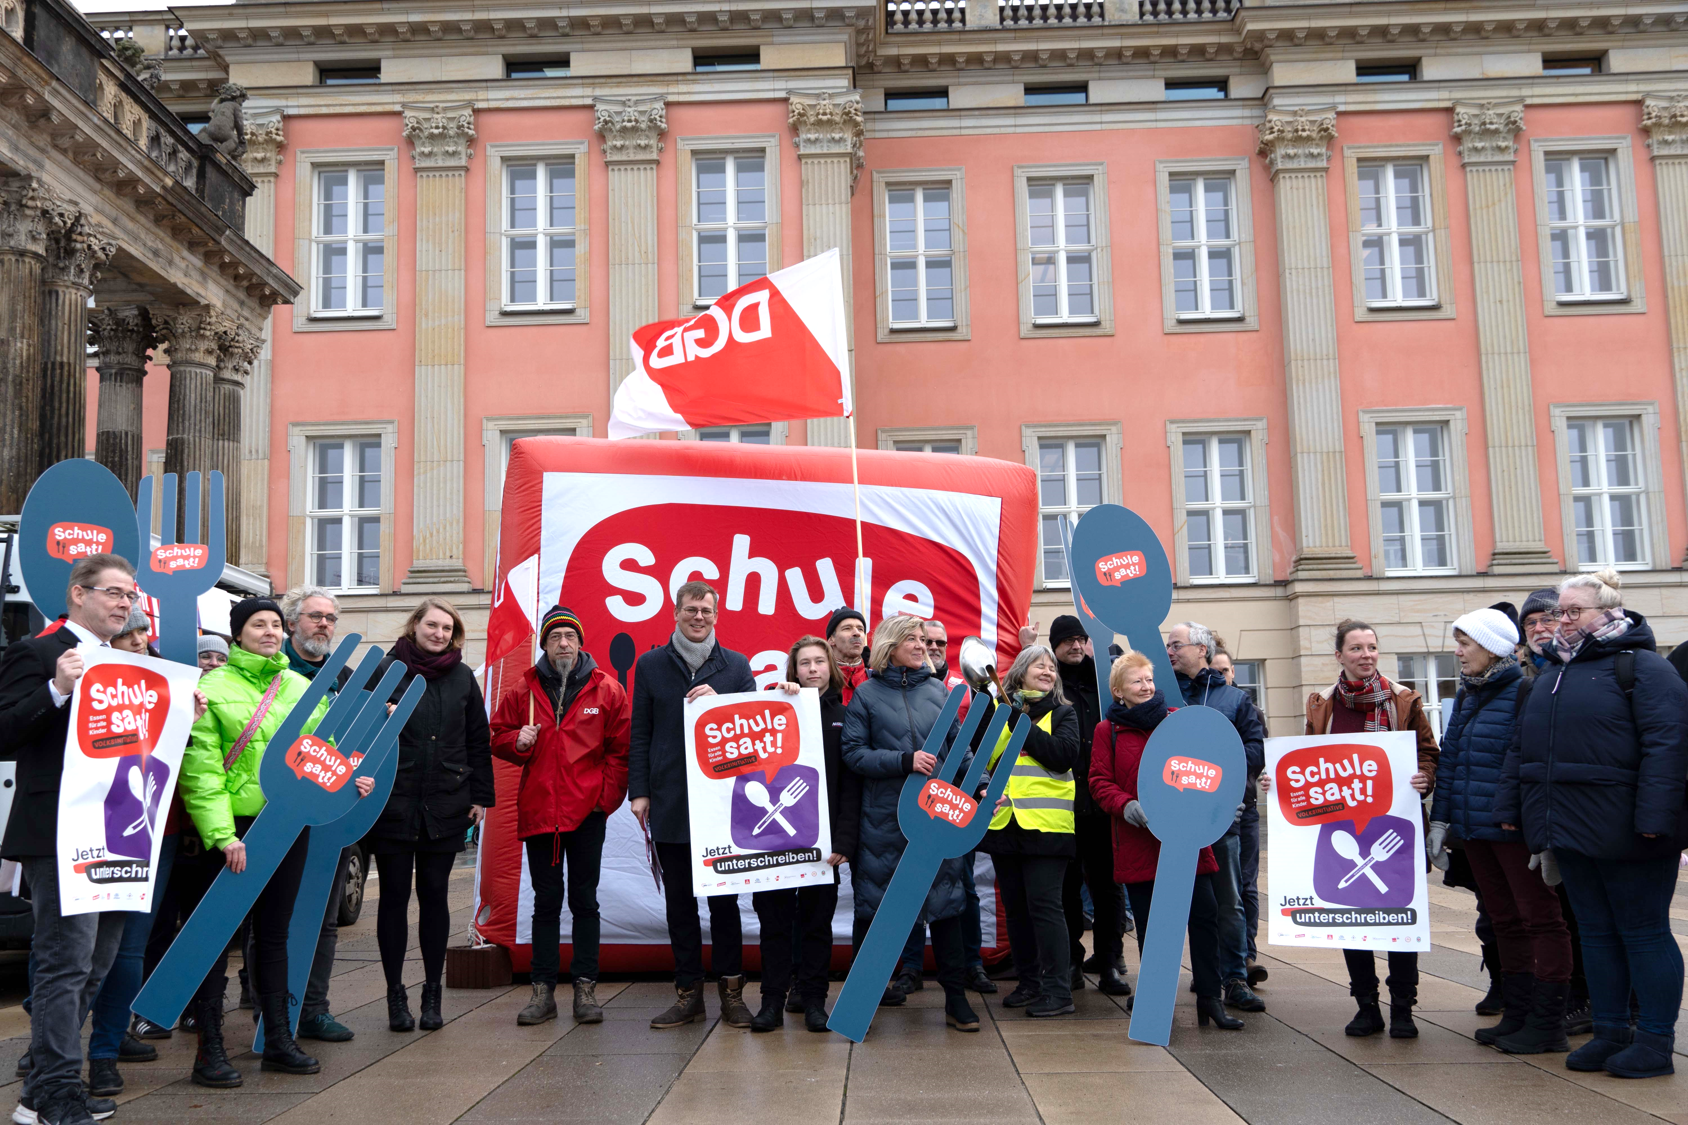 Gruppenbild. Vor dem Landtag Brandenburg. Mehrere Personen mit Schildern und großen Gabeln und Löffeln, diese sind beschriftet mit: Schule satt!